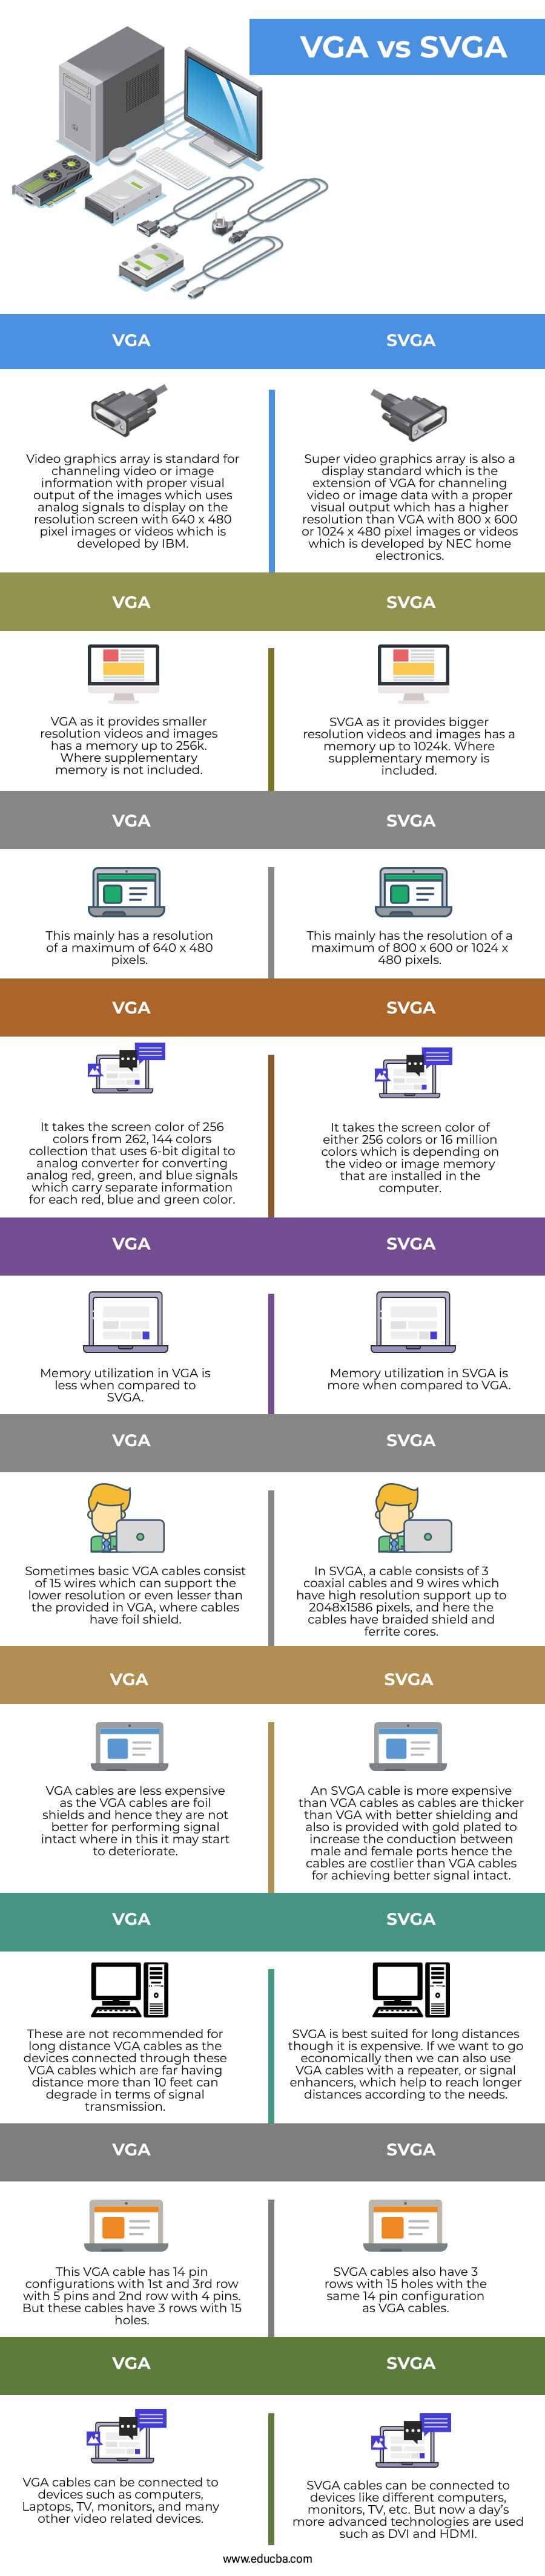 VGA-vs-SVGA-info